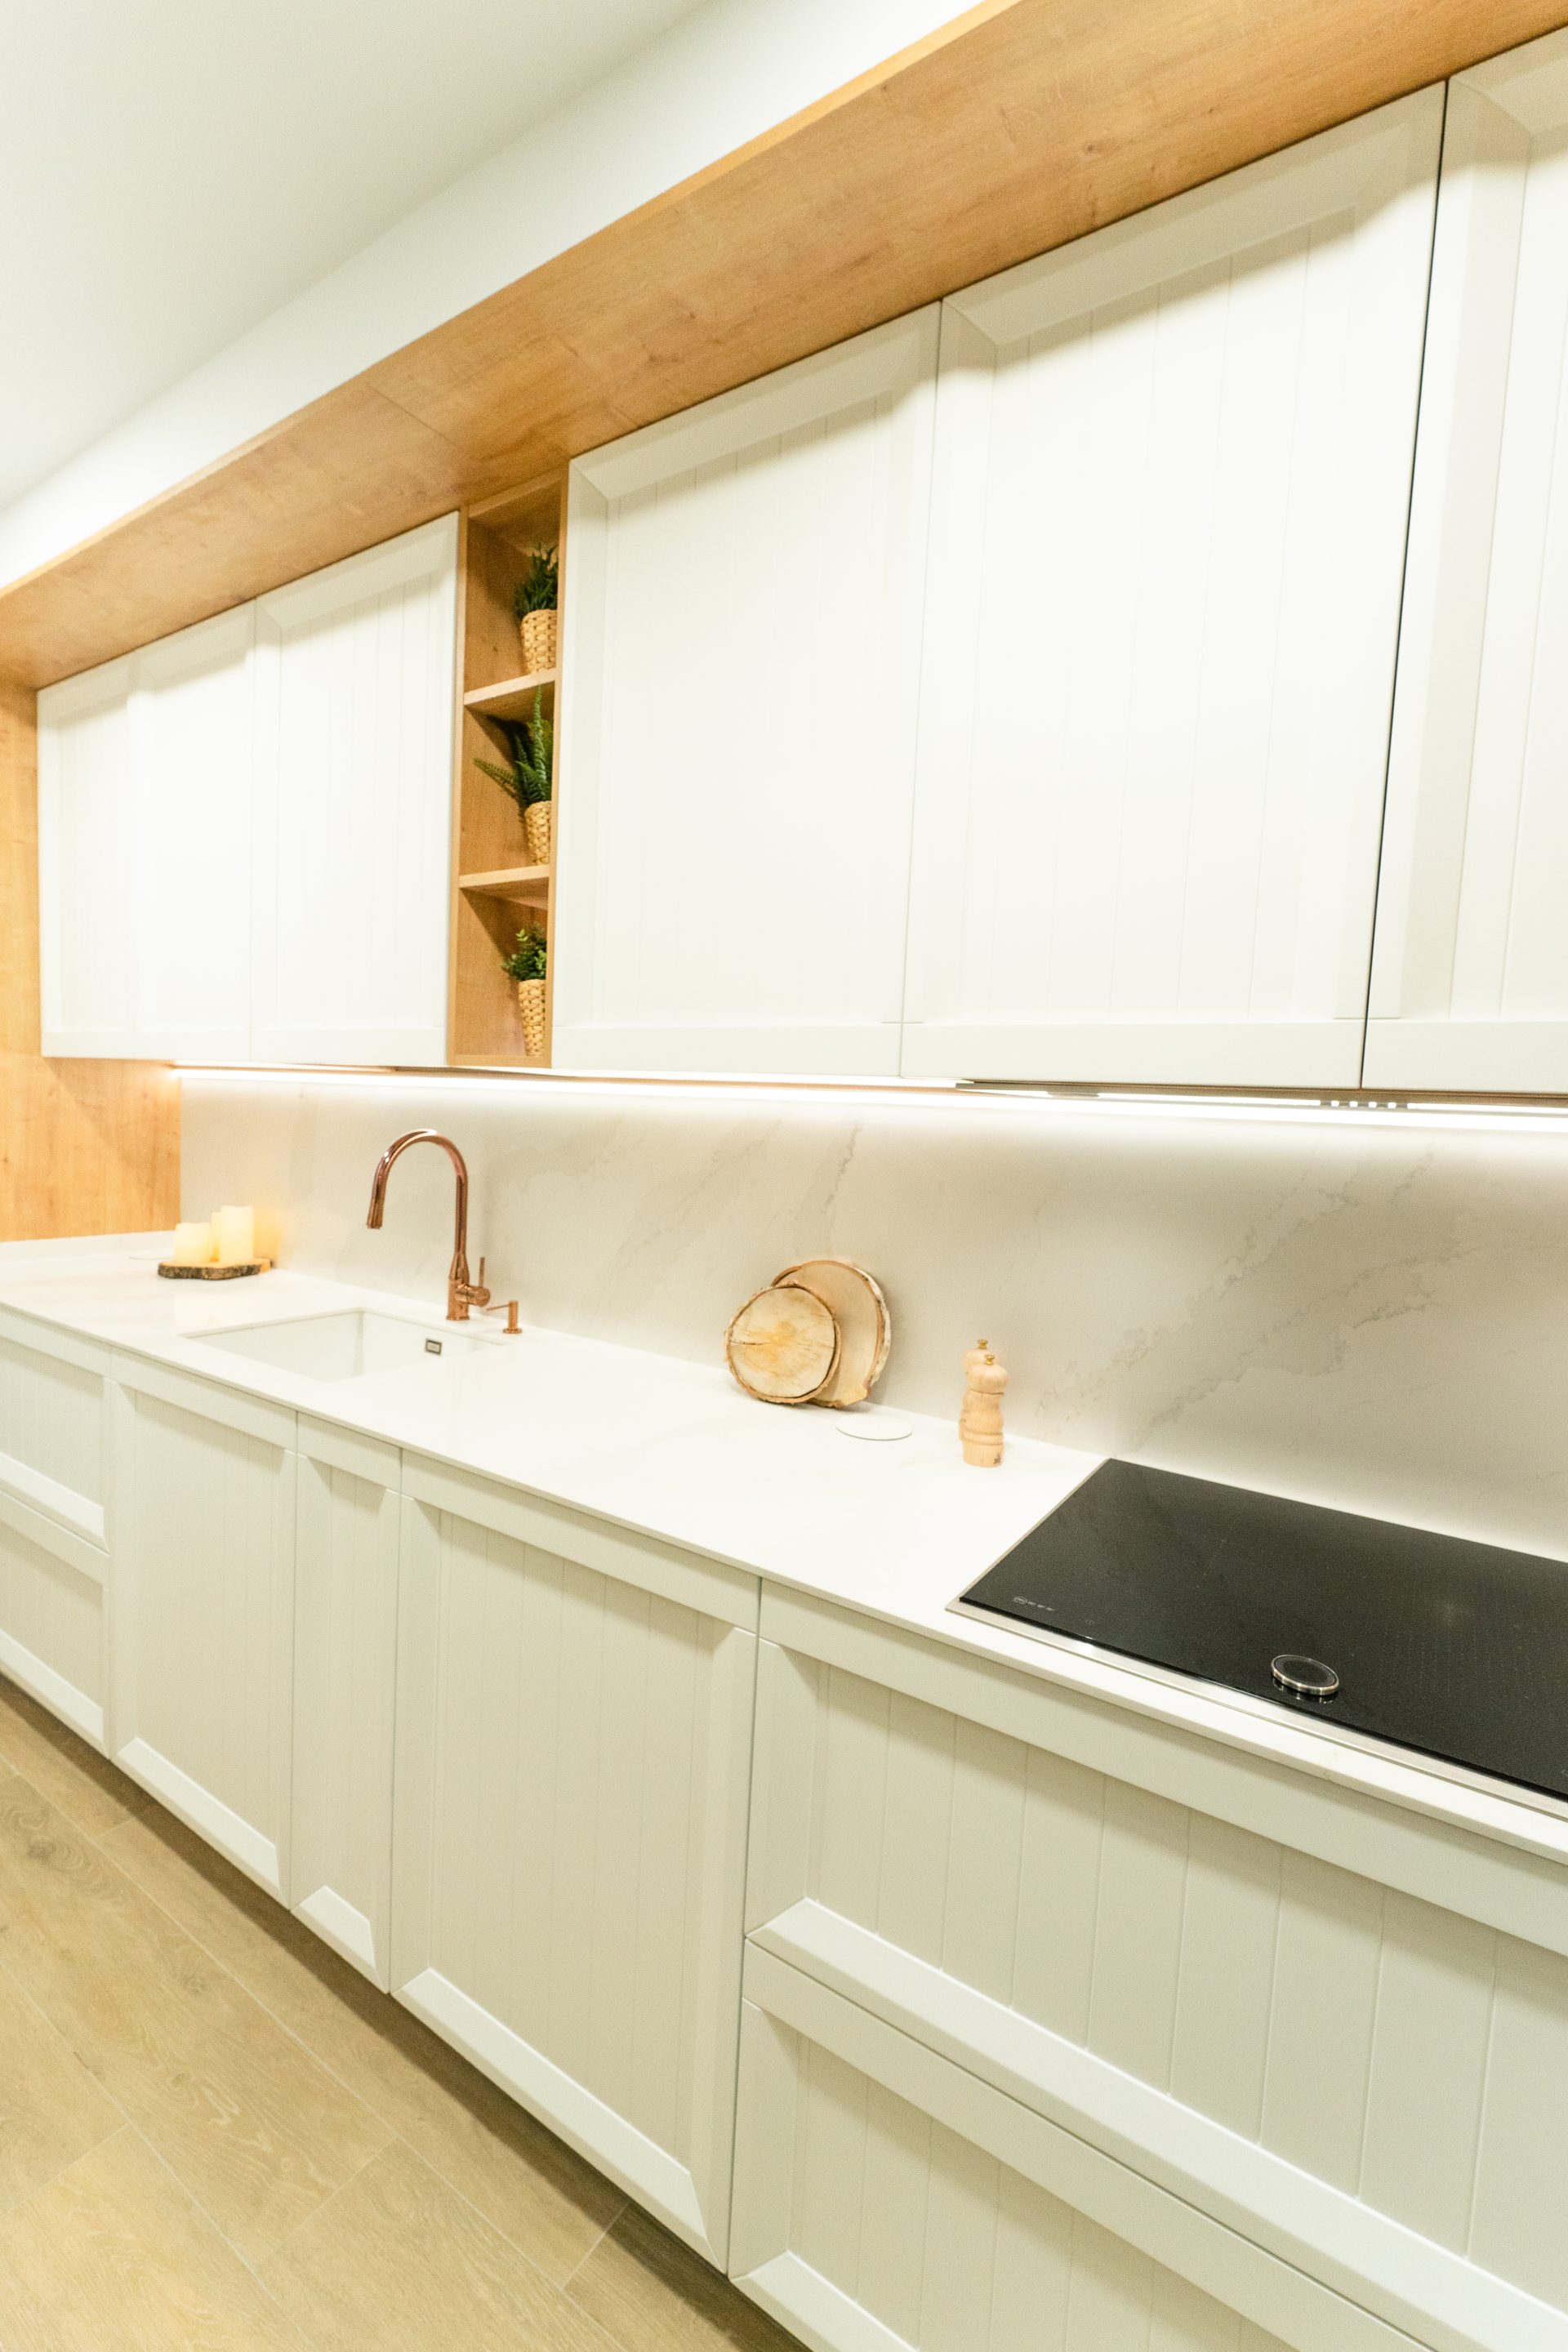 Zona de cocción y fregadero color cobre para complementar el diseño minimalista